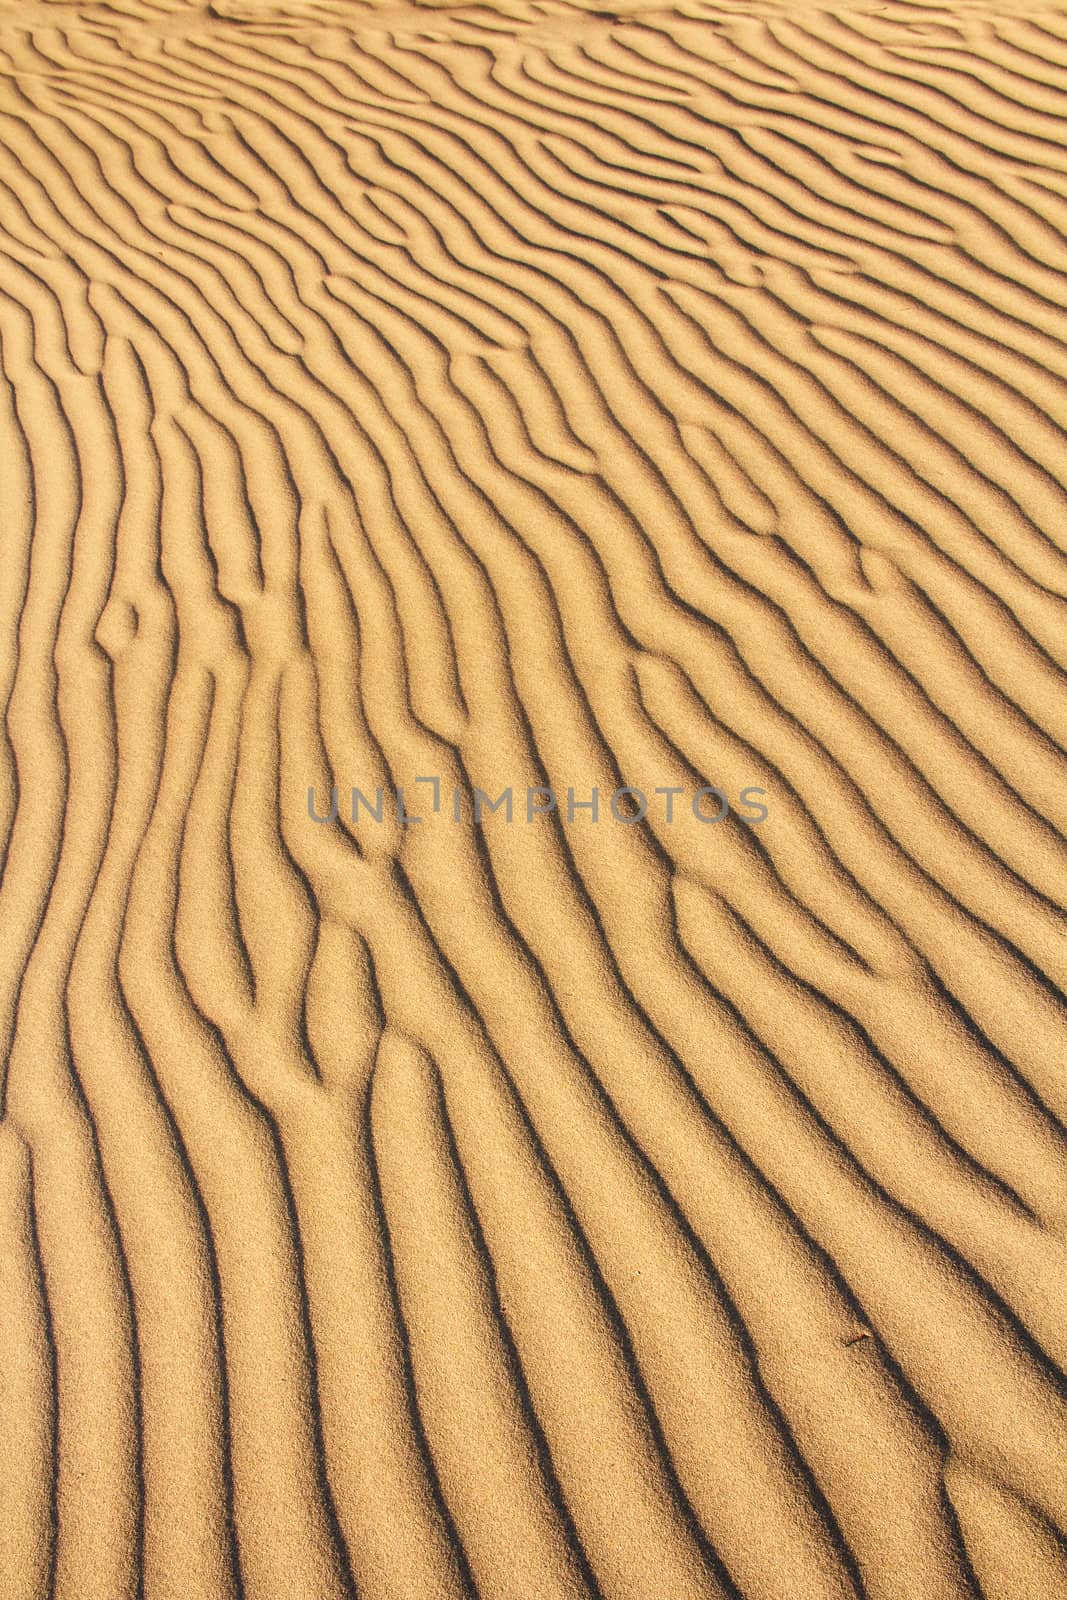 sand dunes texture by SkyLynx